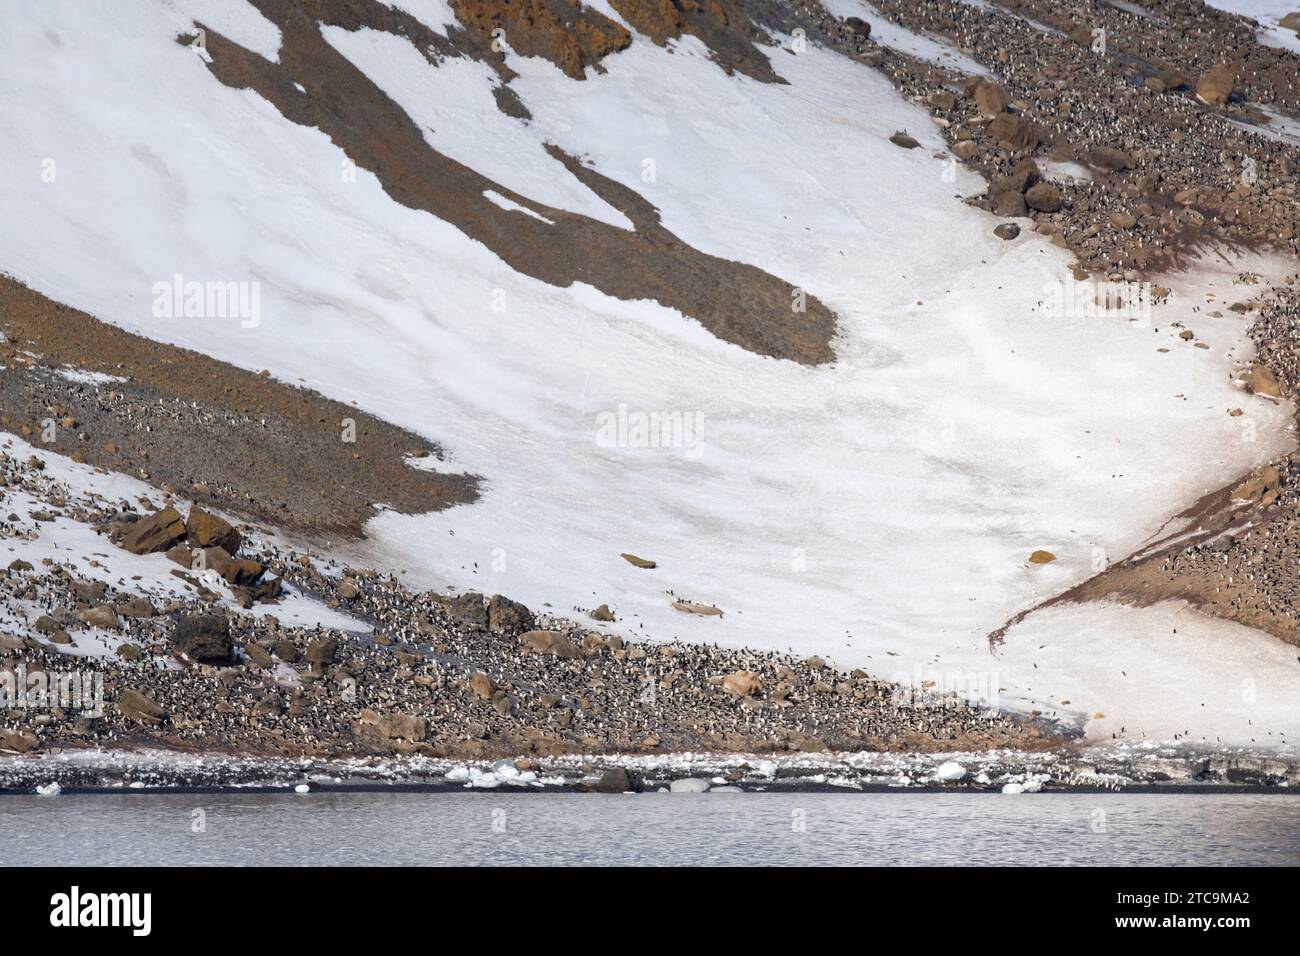 Antarktis, Brown Bluff. Gentoo-Pinguinkolonie am Fuße des Berges. Stockfoto